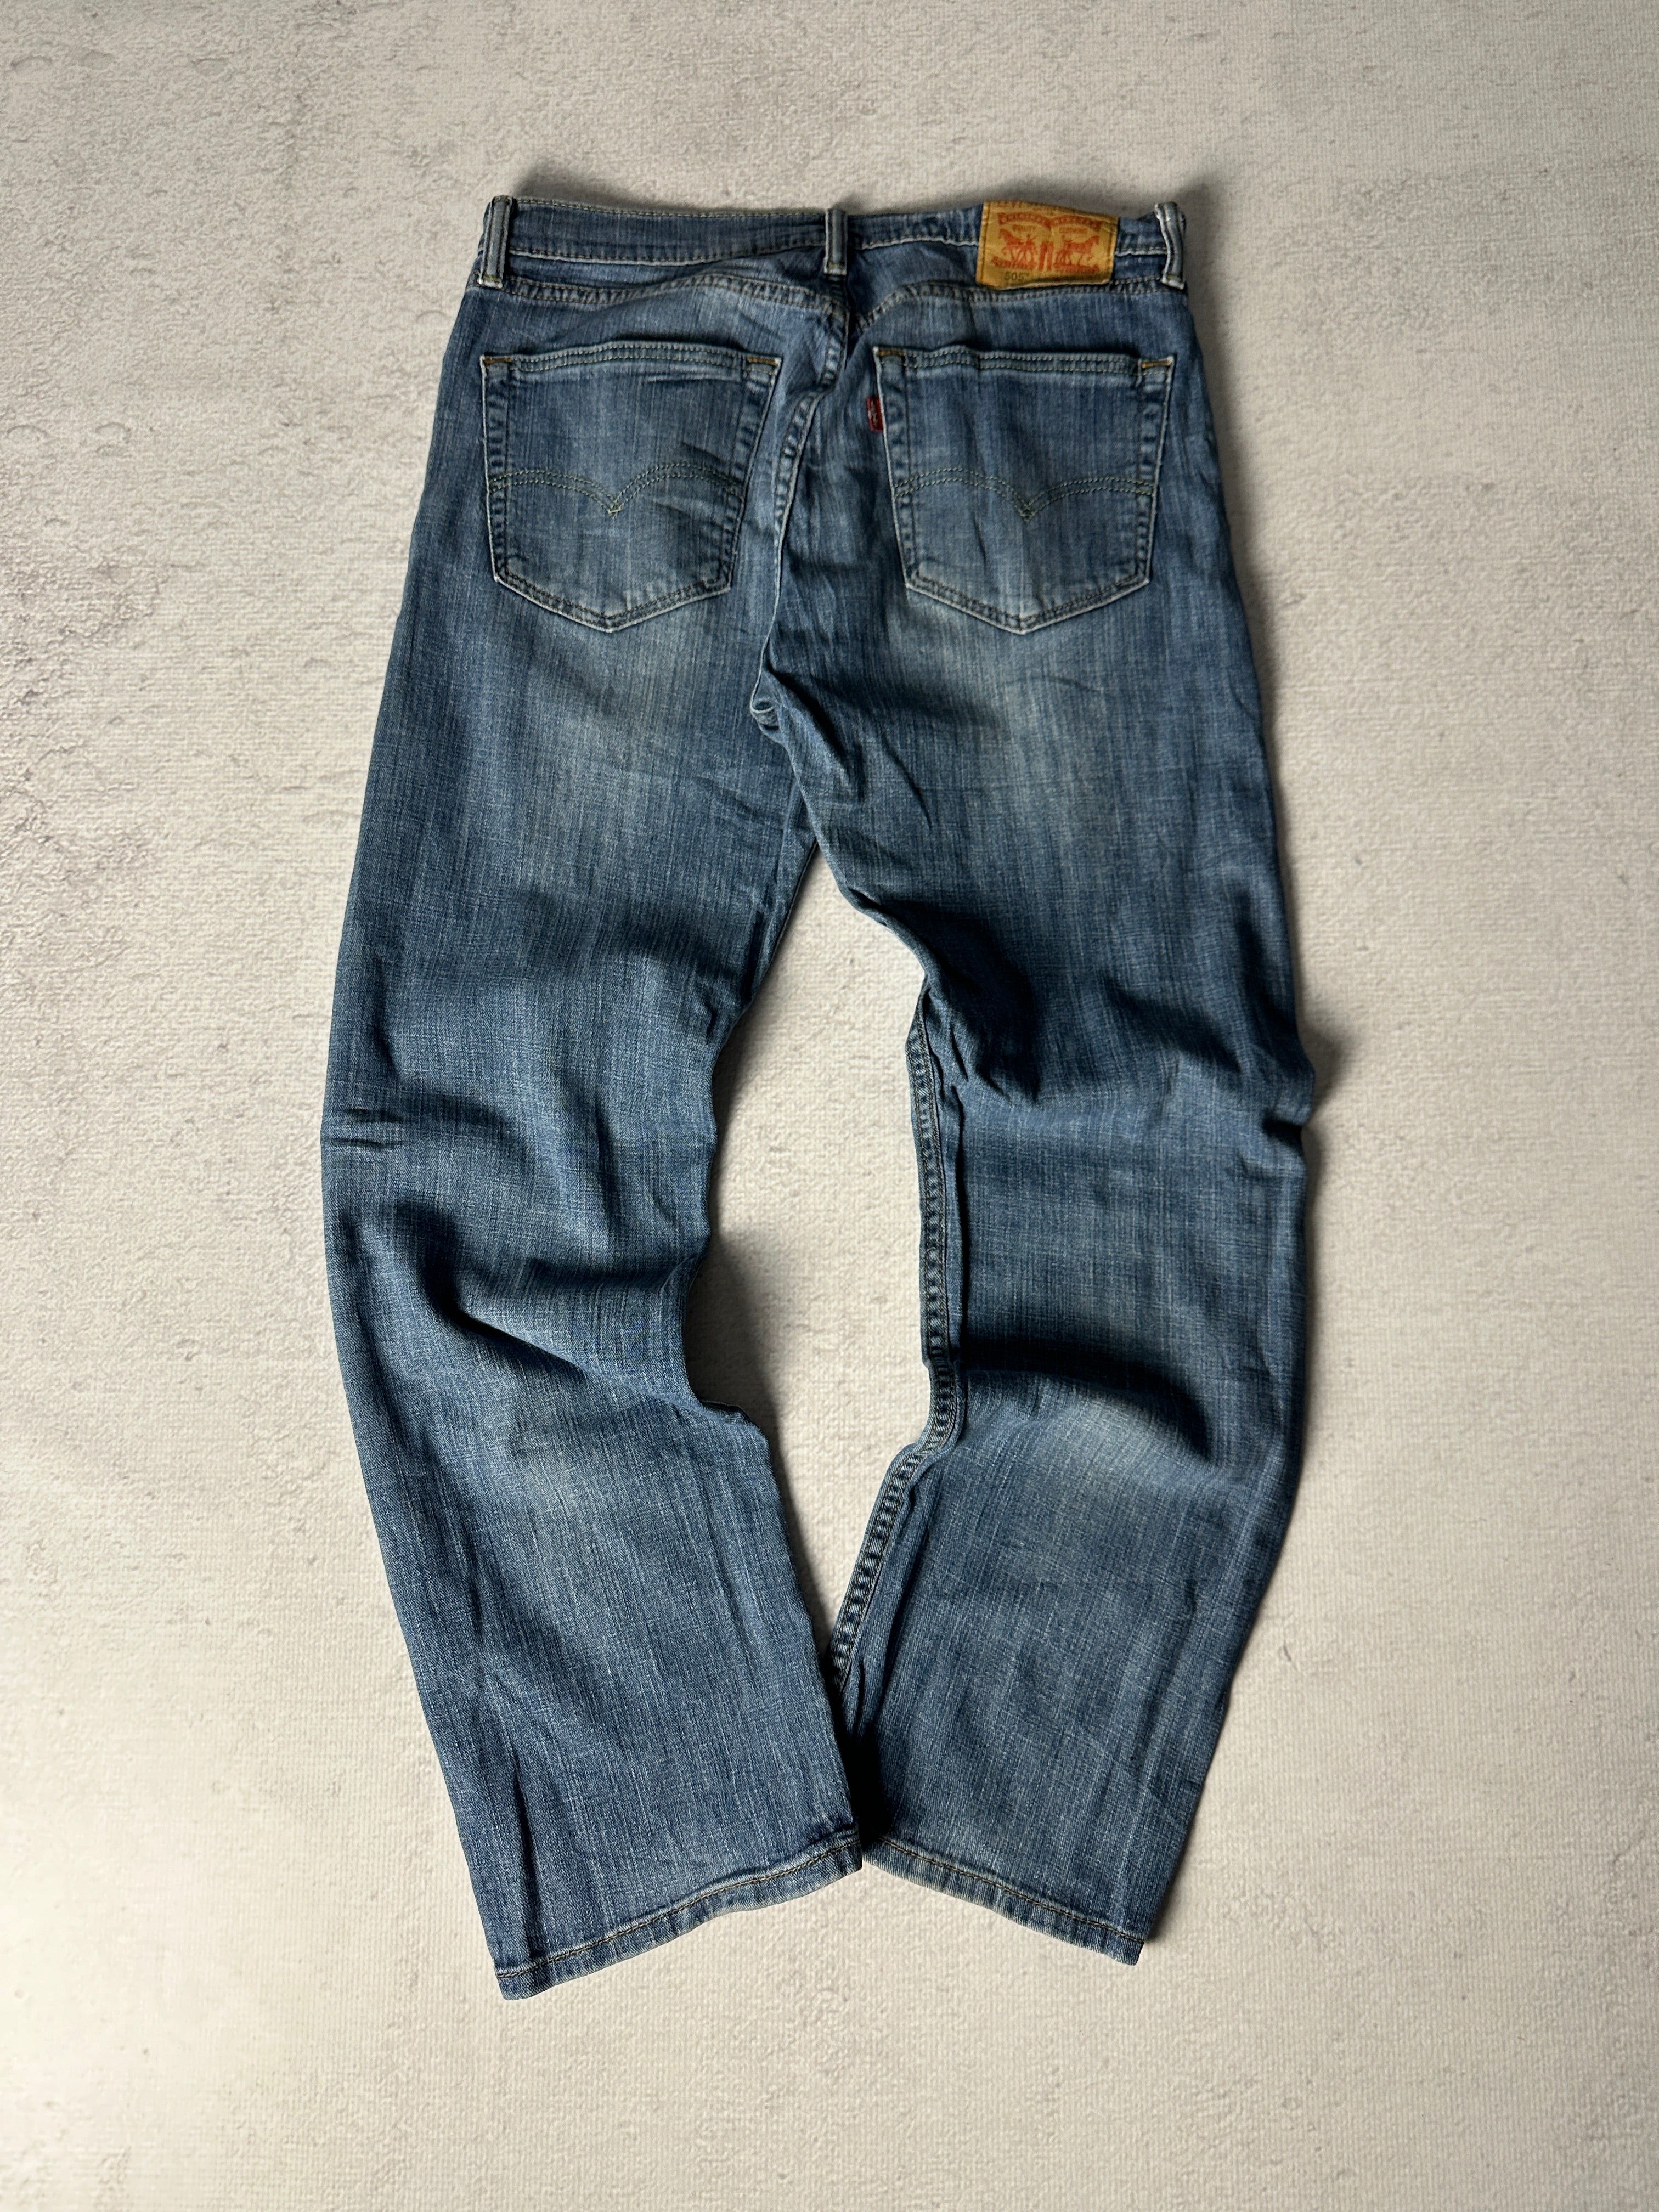 Vintage Levis 505 Jeans - Men's 34W30L